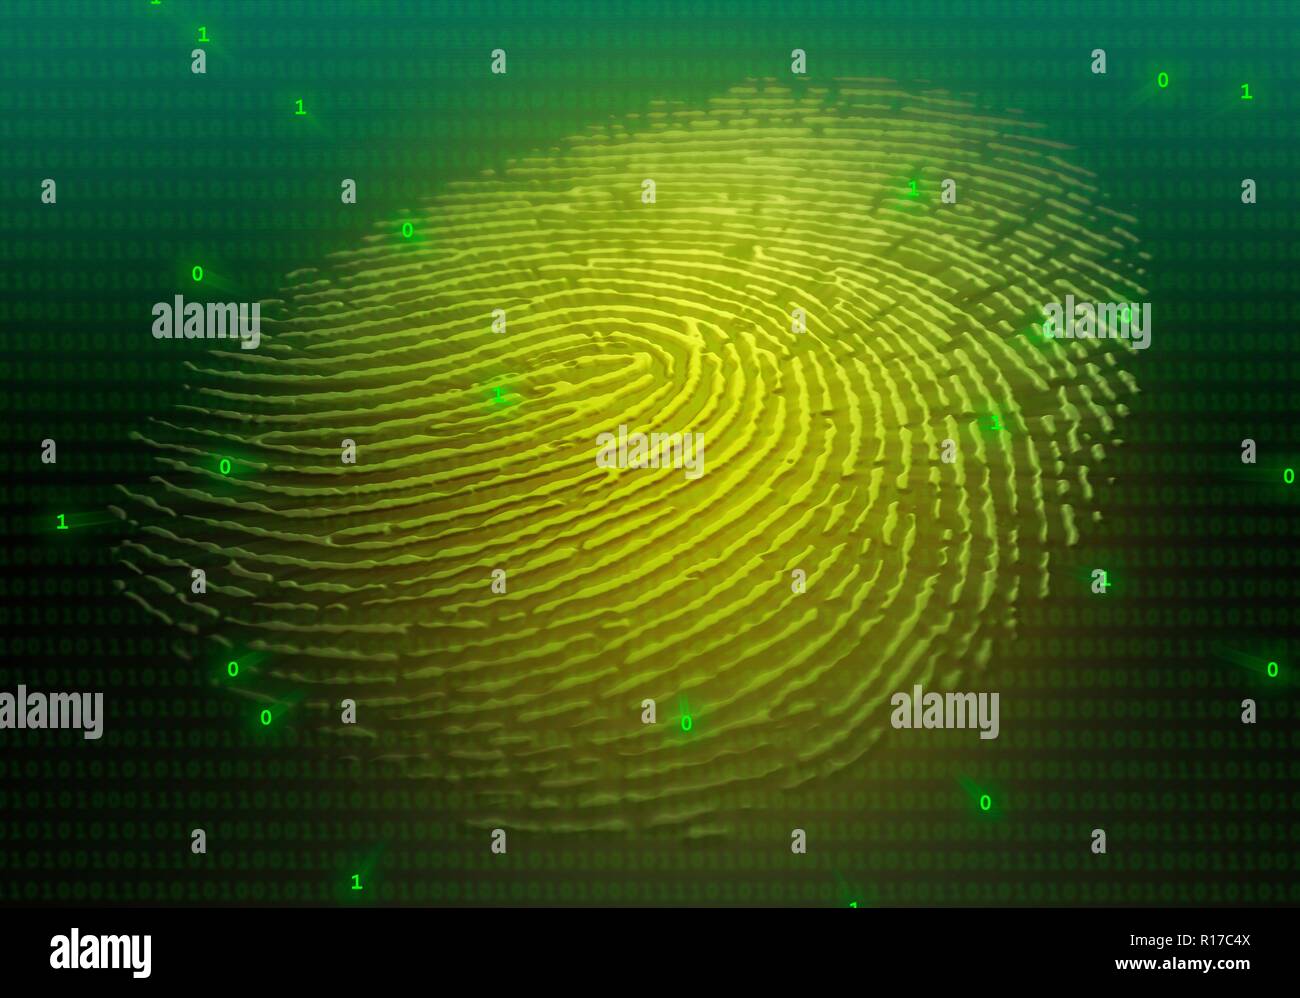 Abbildung: Eine geprägte menschliche Fingerabdruck auf einer flachen Oberfläche, mit binären Ziffern überlagert. Dies kann verwendet werden, um das Konzept der biometrischen Daten zu vermitteln. Stockfoto